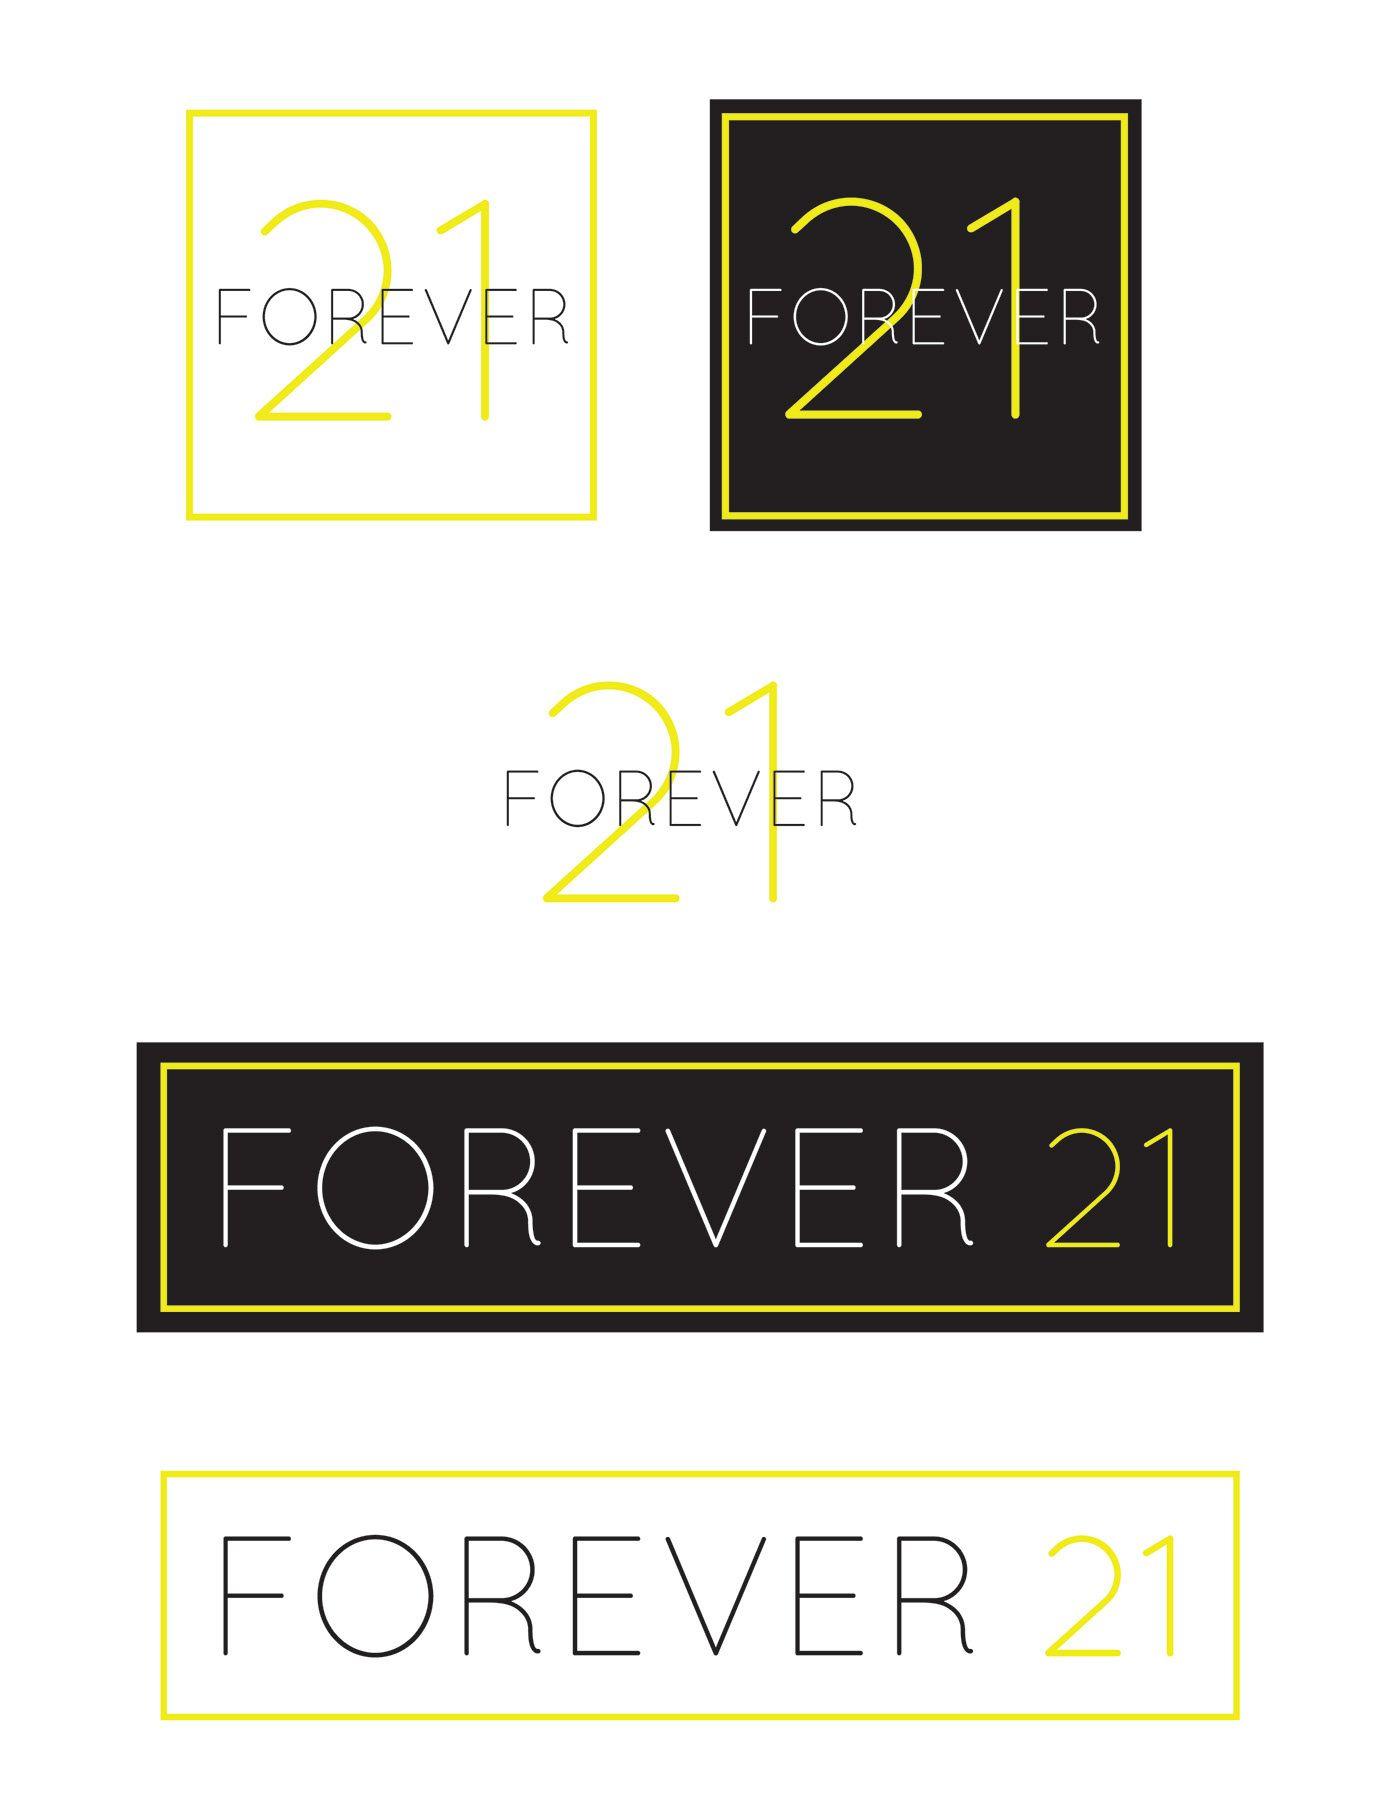 Forever 21 Company Logo - Forever 21 Re Brand